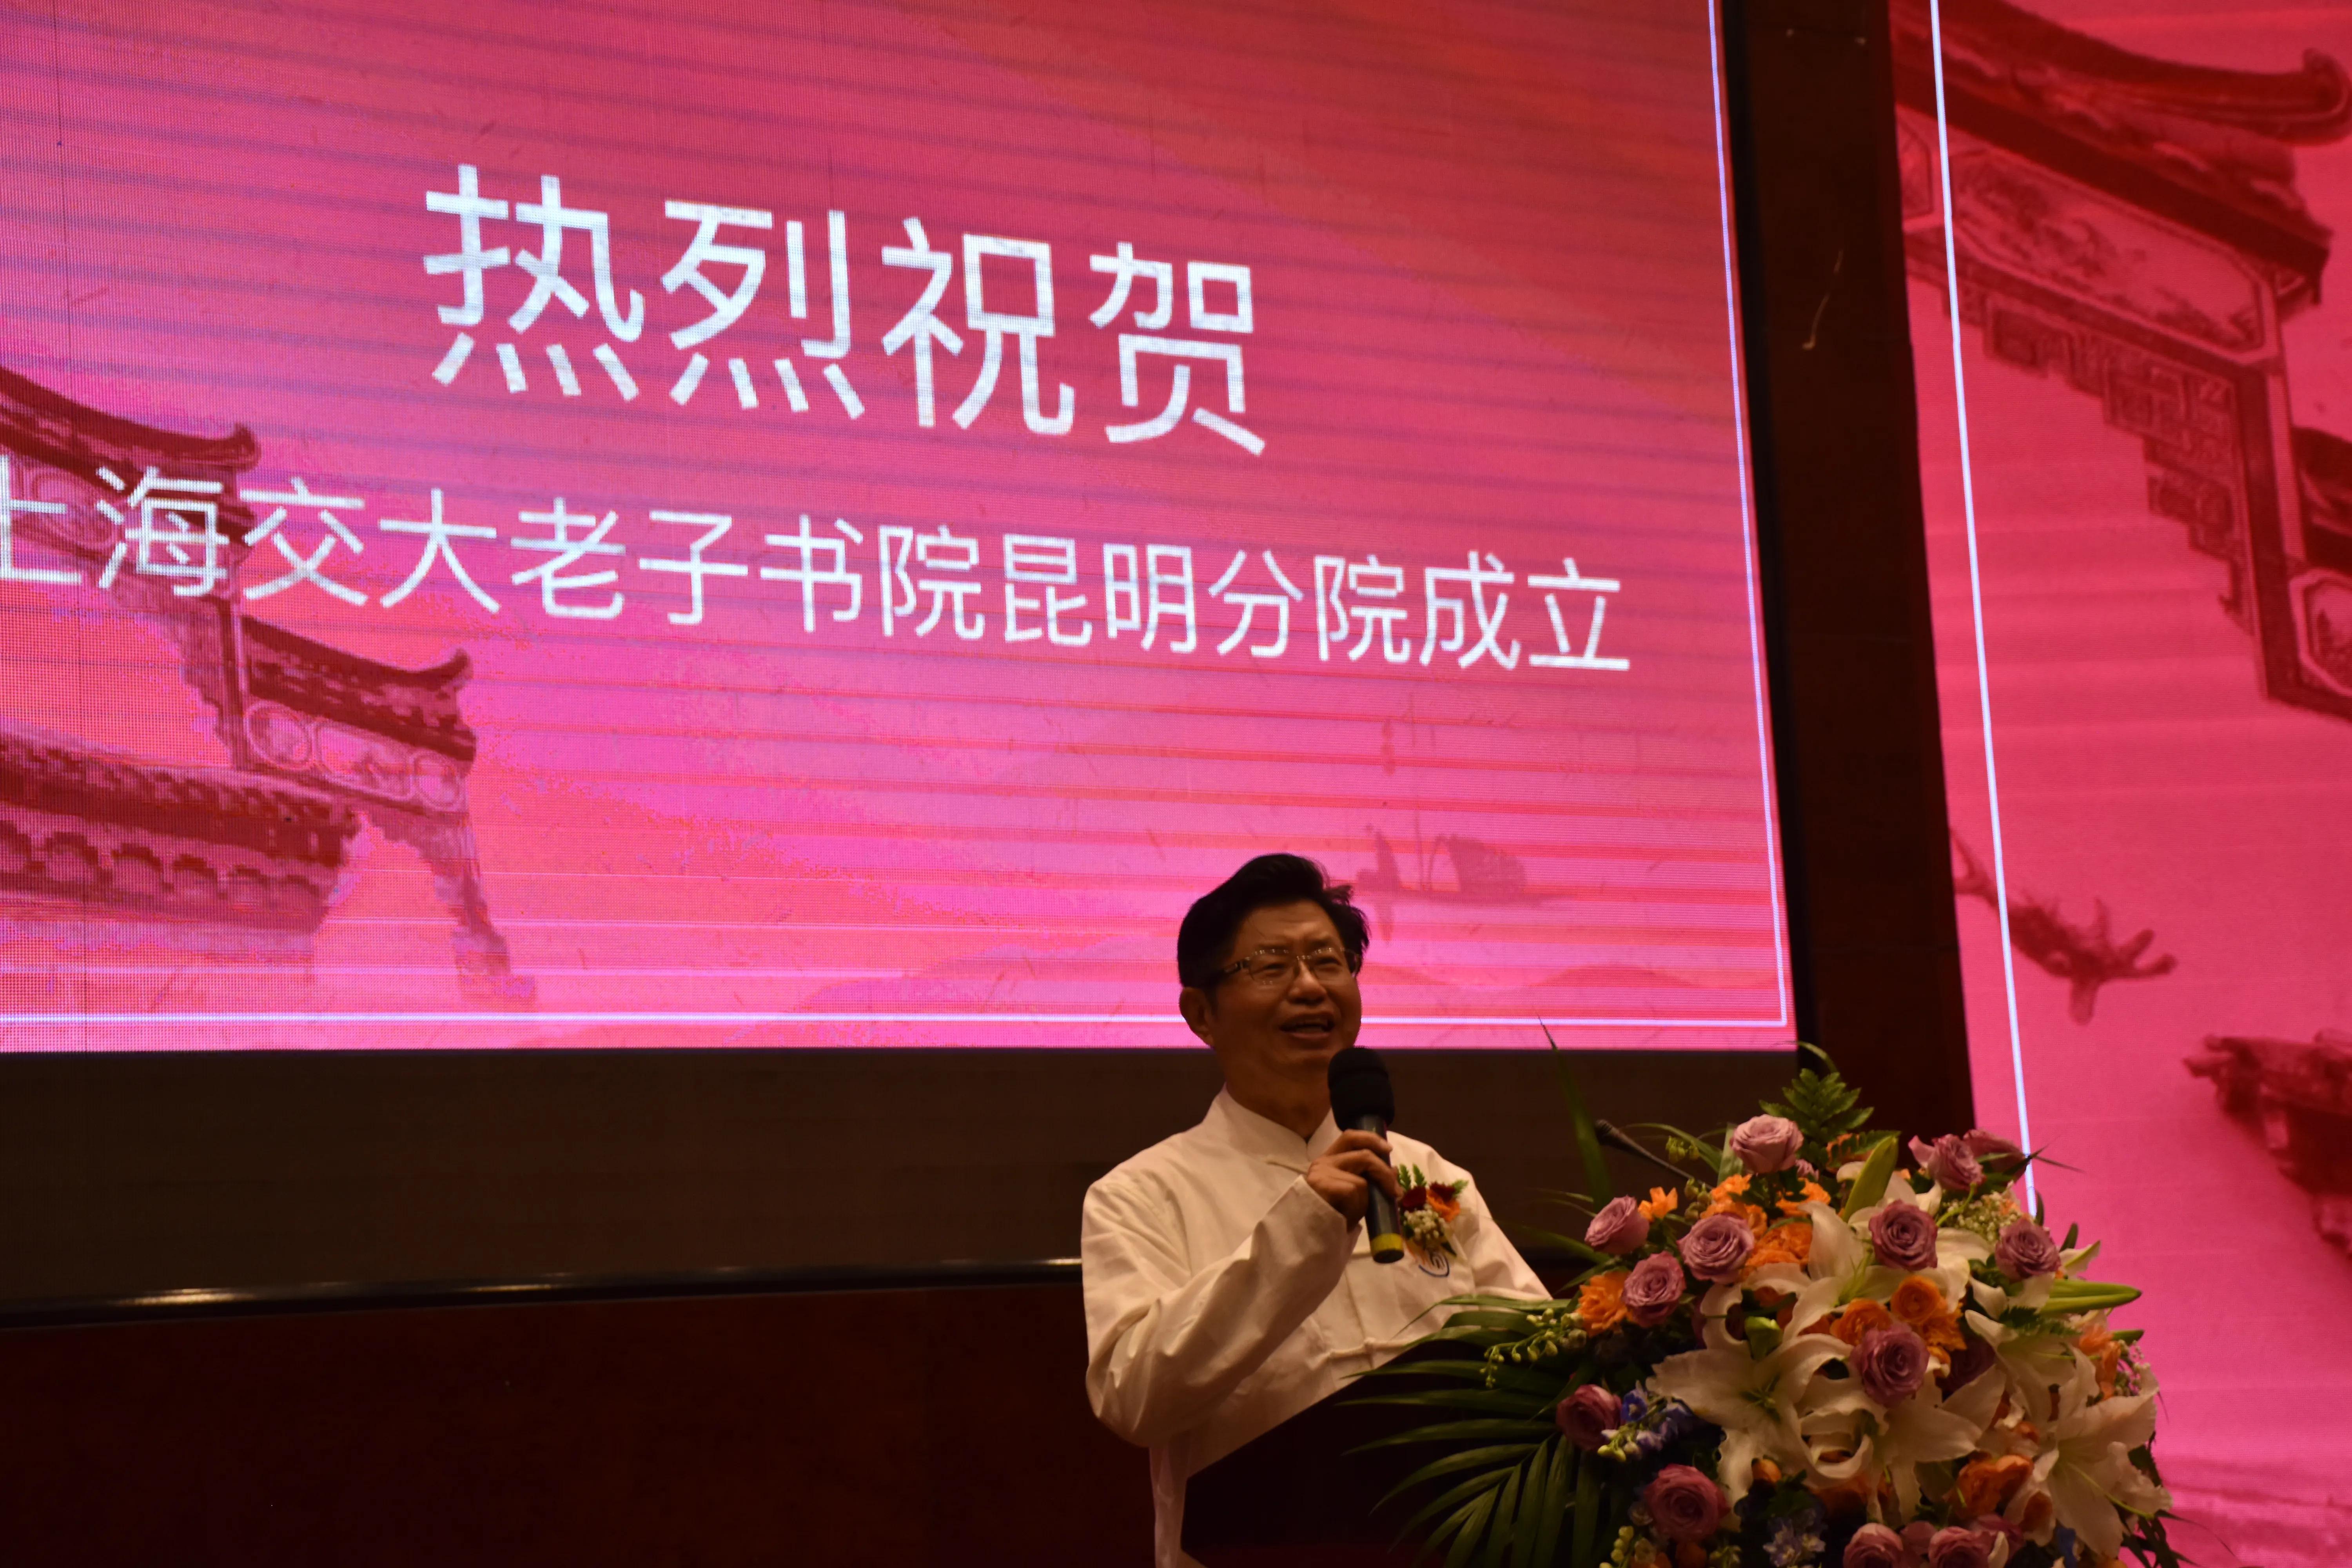 上海交大老子书院昆明分院揭牌仪式在昆明举行